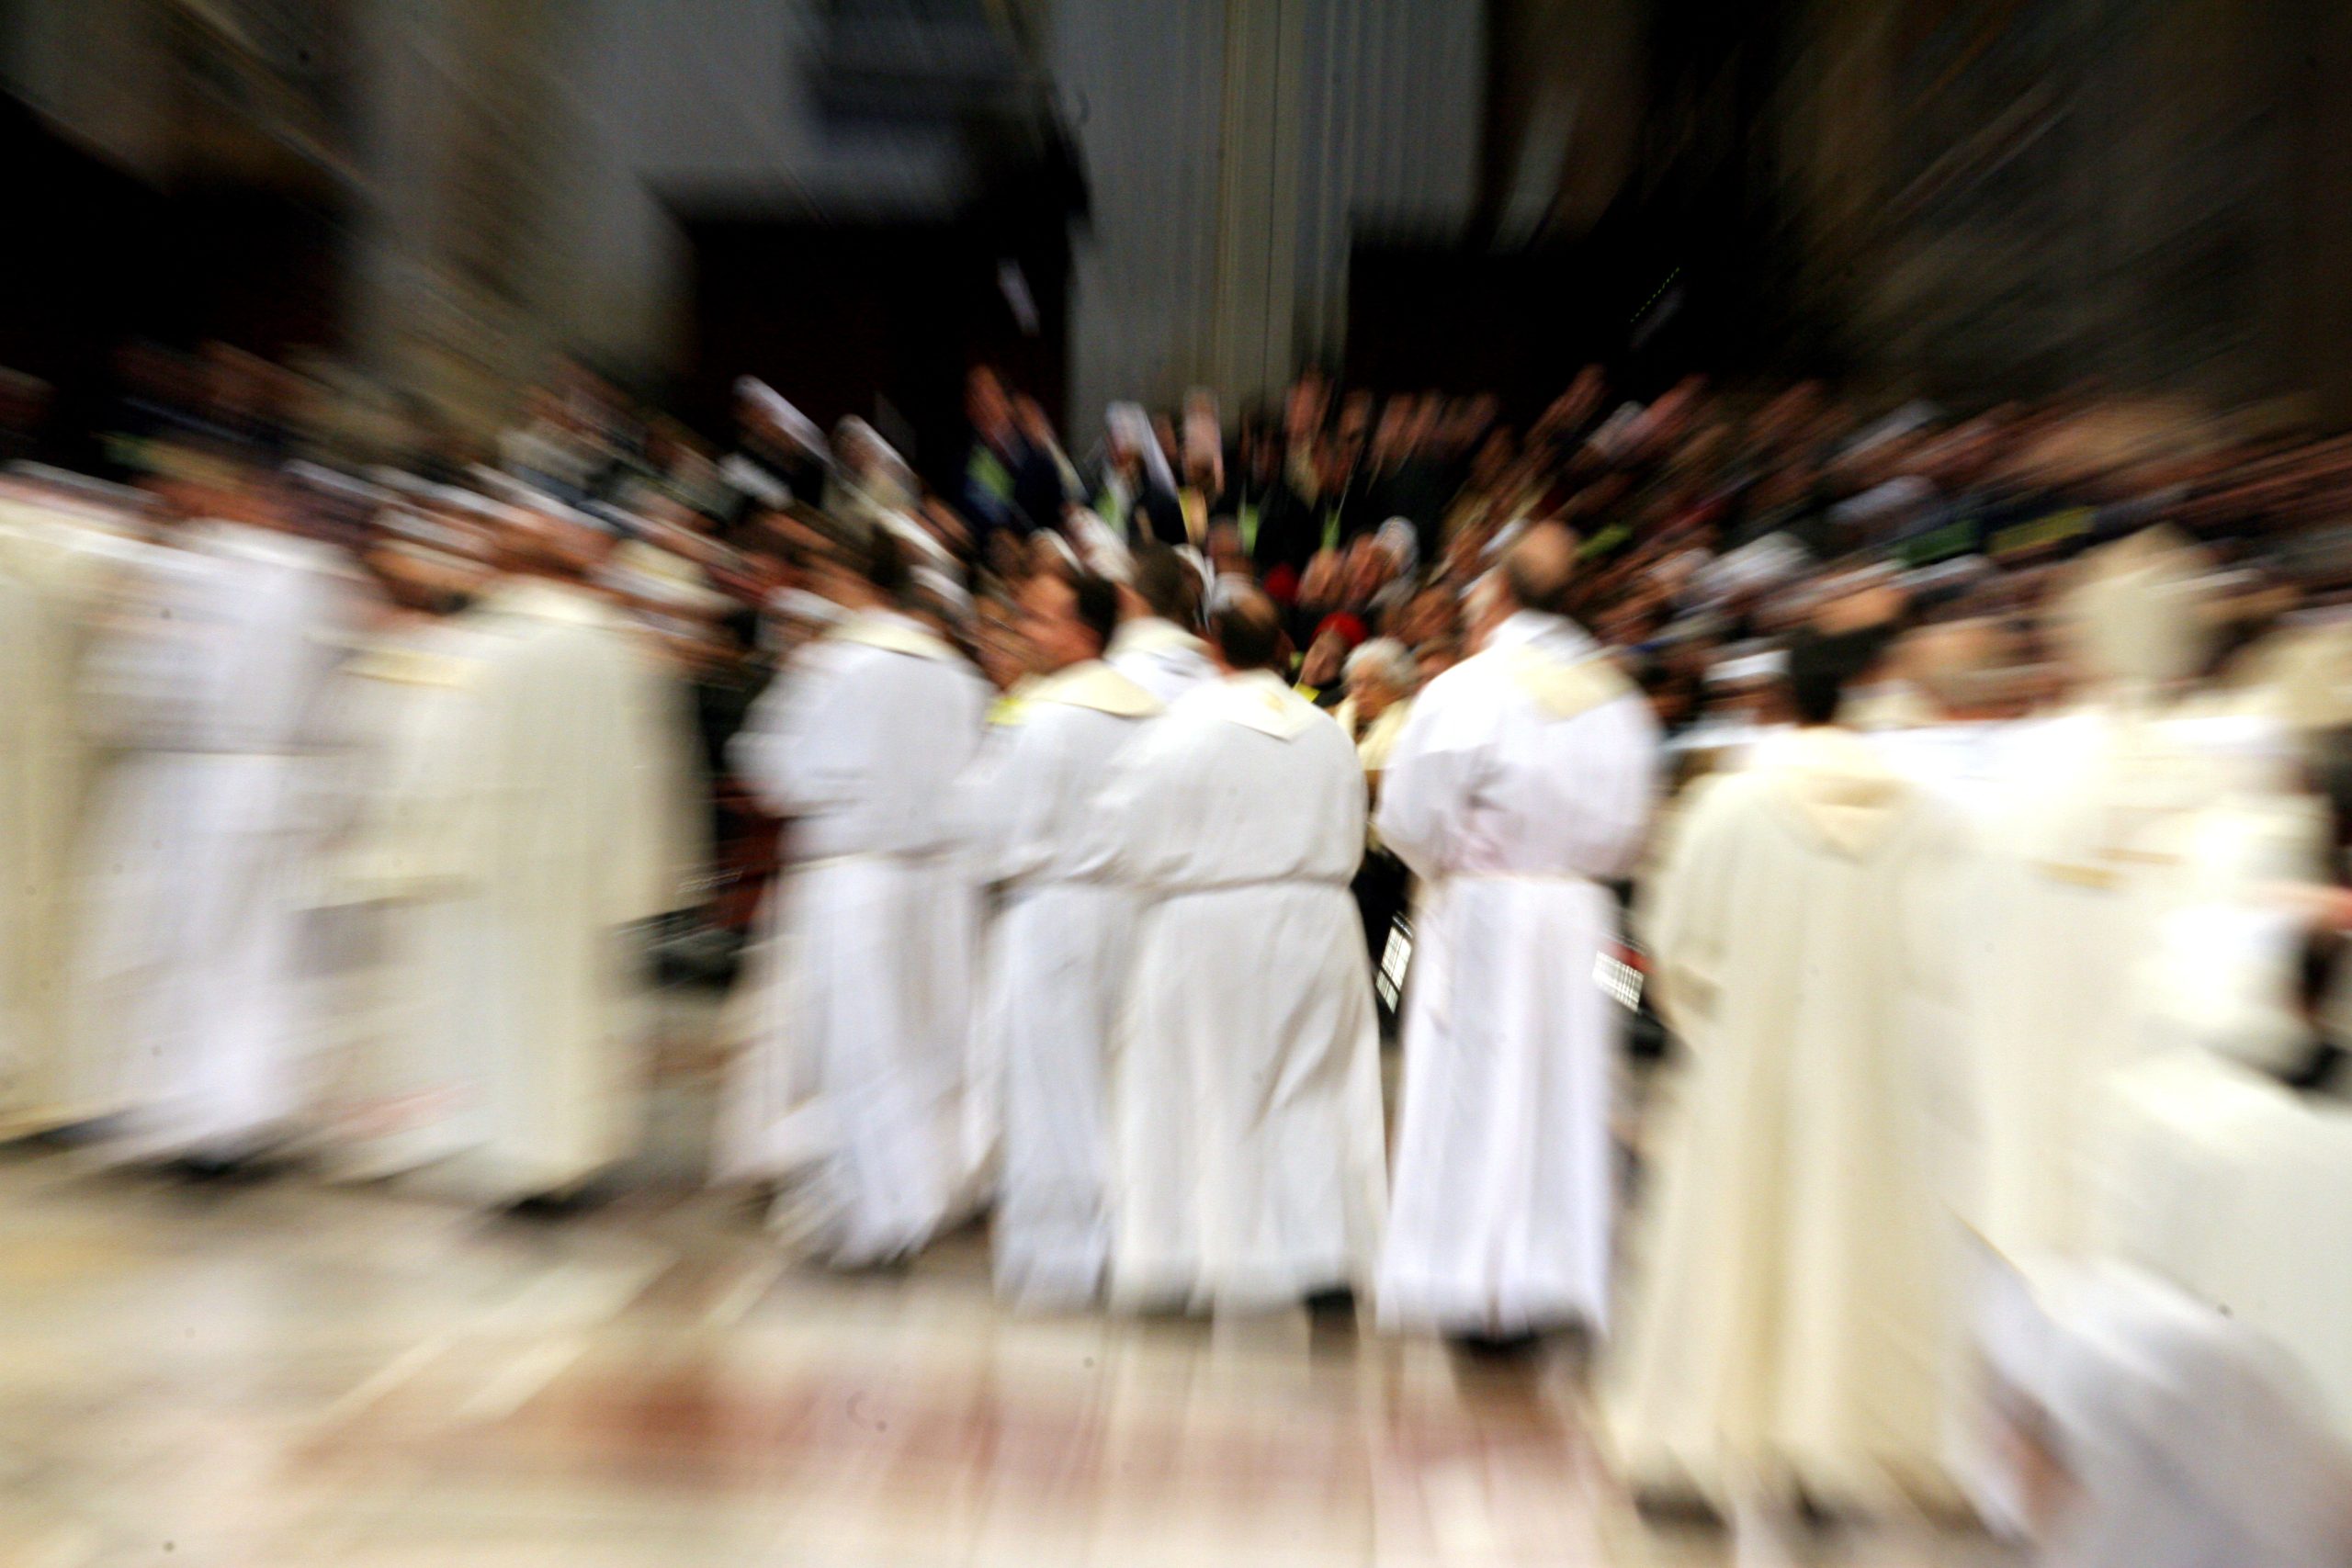 Insieme al clero, ai Consigli parrocchiali e agli Uffici pastorali